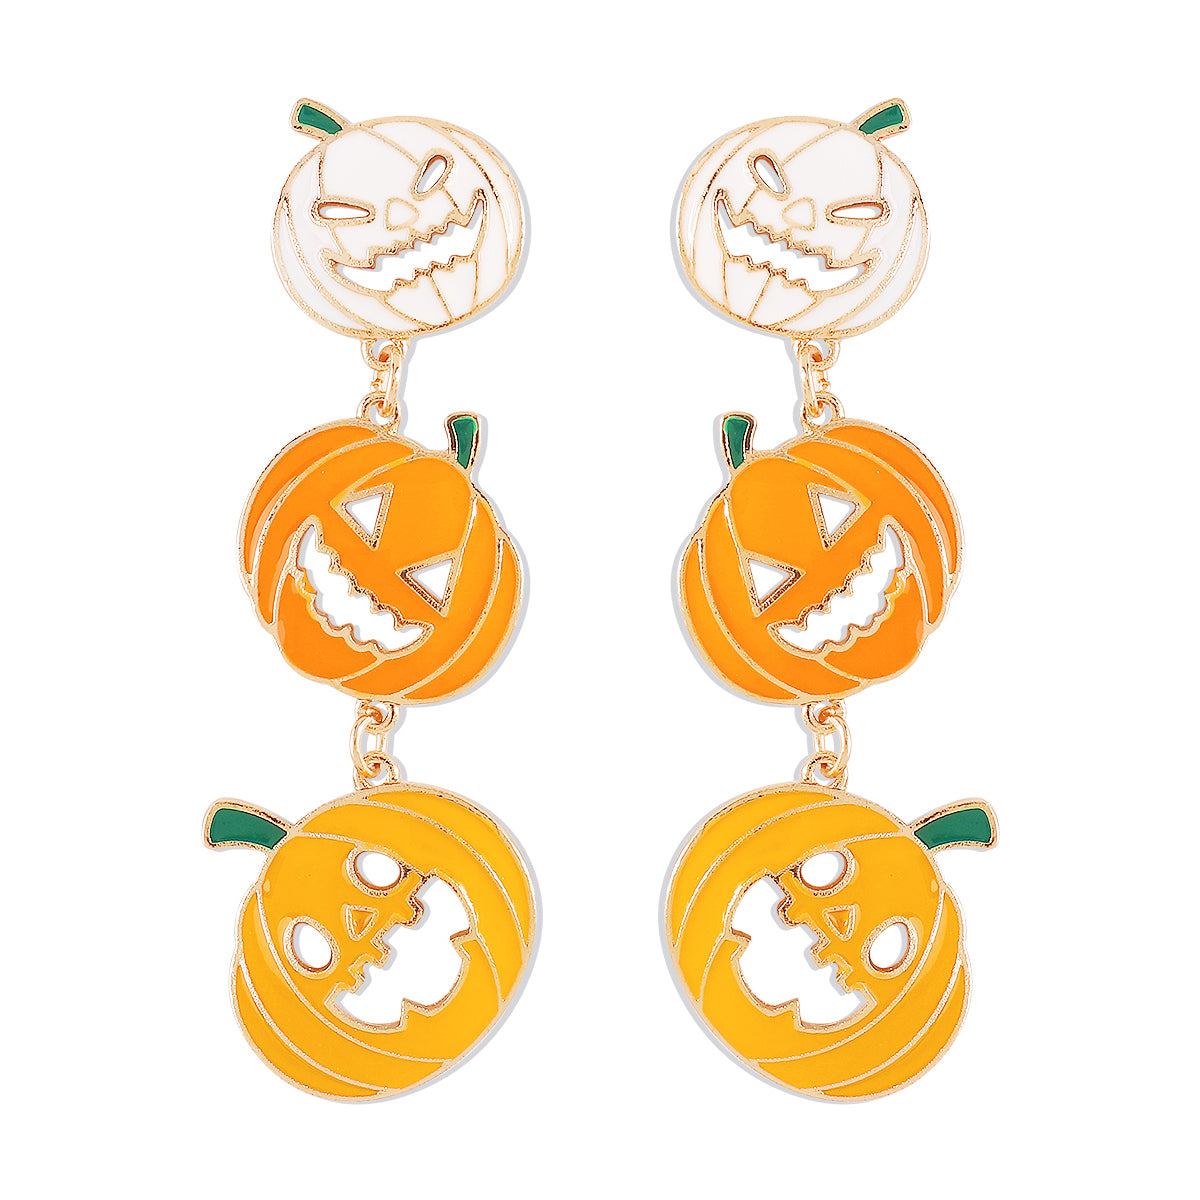 Wholesale Jewelry Gothic Cool Style Pumpkin Alloy Enamel Drop Earrings